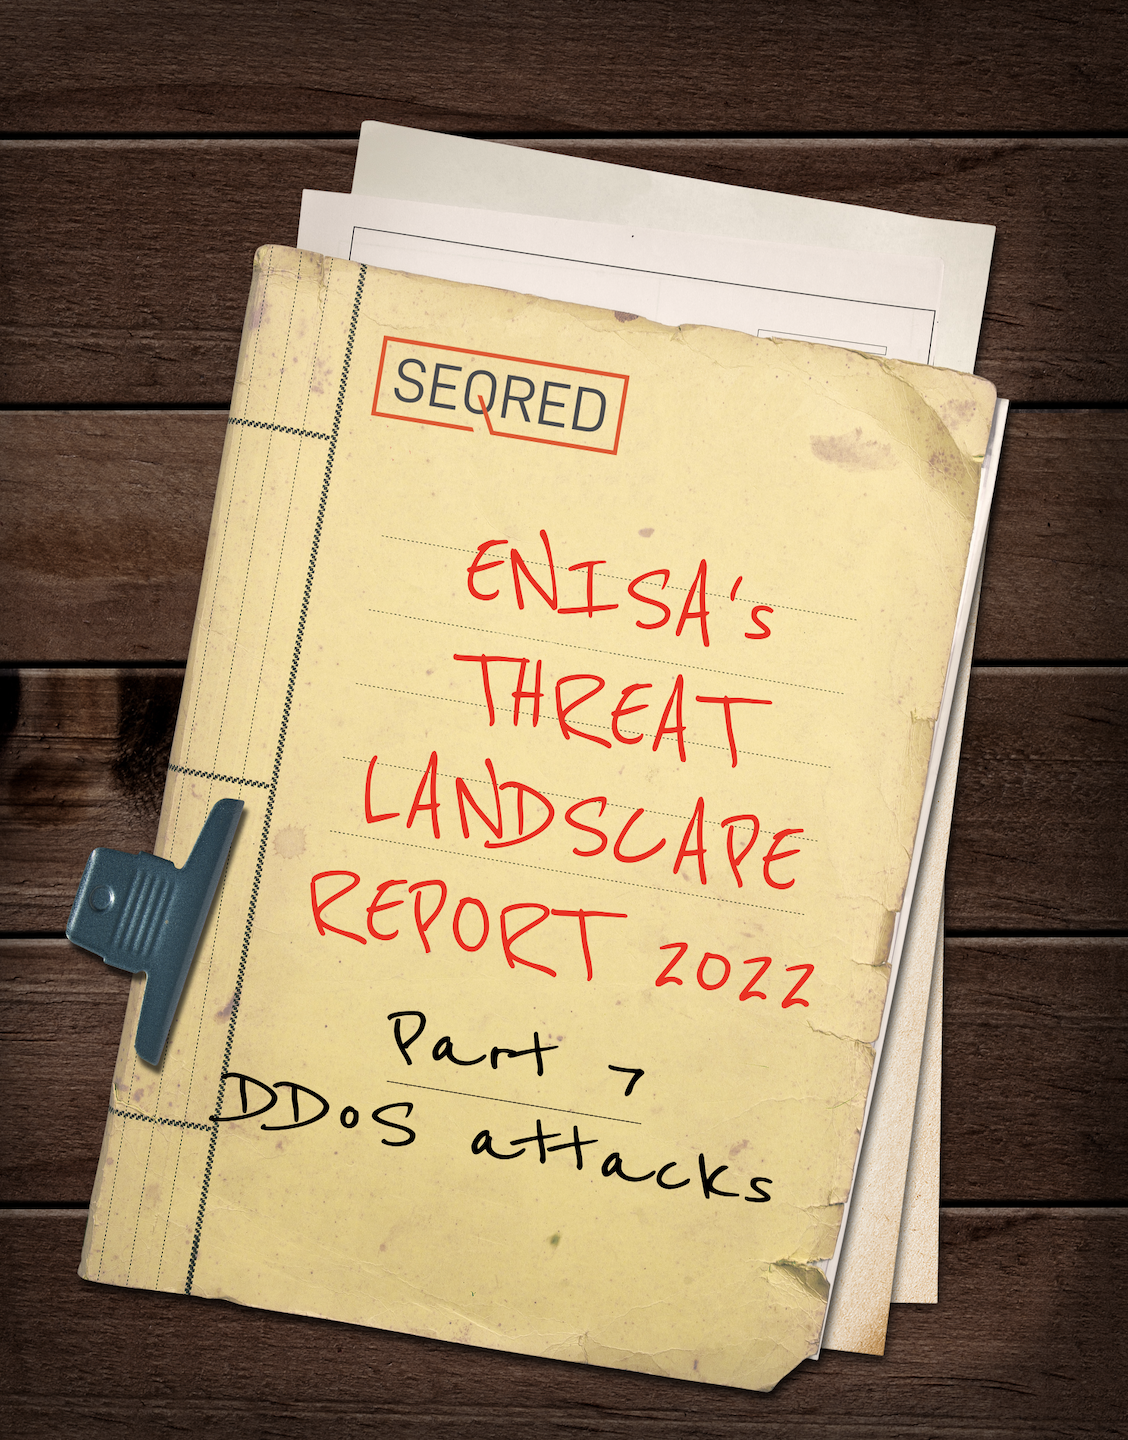 ENISA p7 DDoS attacks